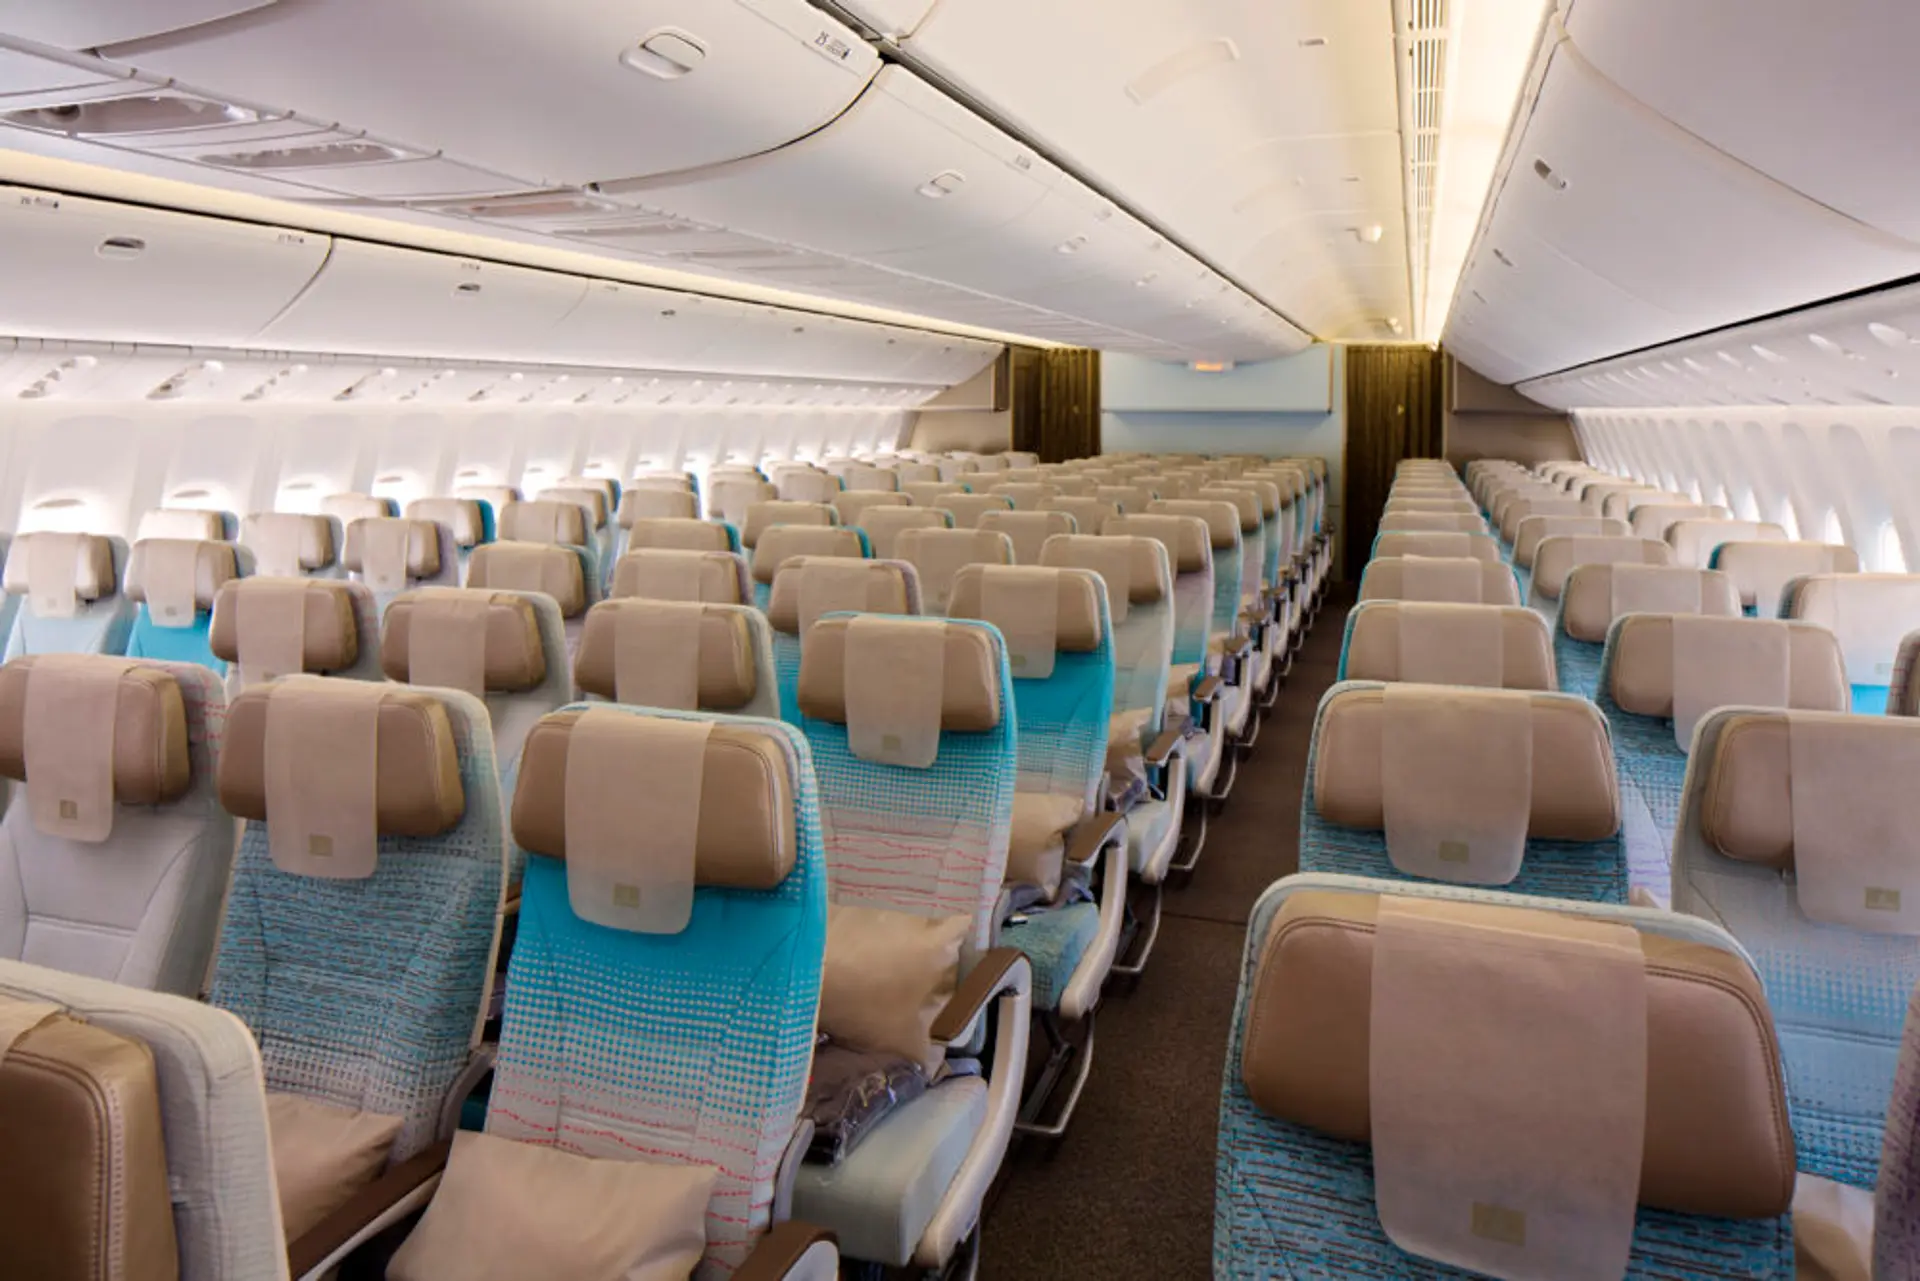 Emirates-Economy-Class-cabin-on-Boeing-777-300ER.jpg